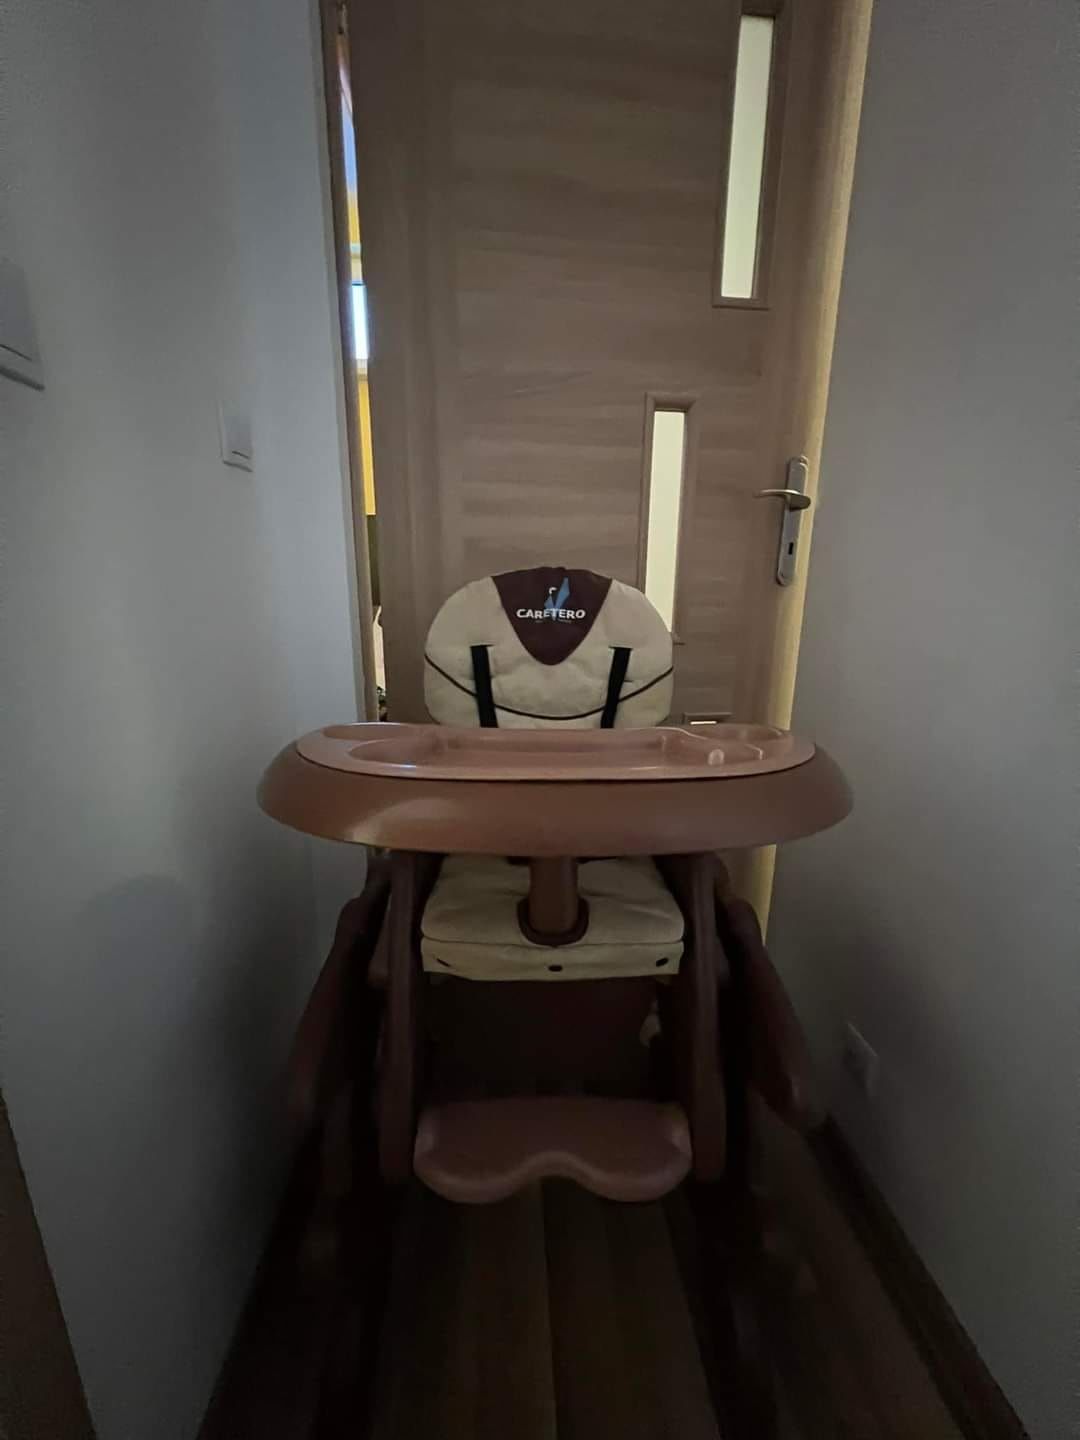 Stolik,krzesełko dla dzieci Caretero